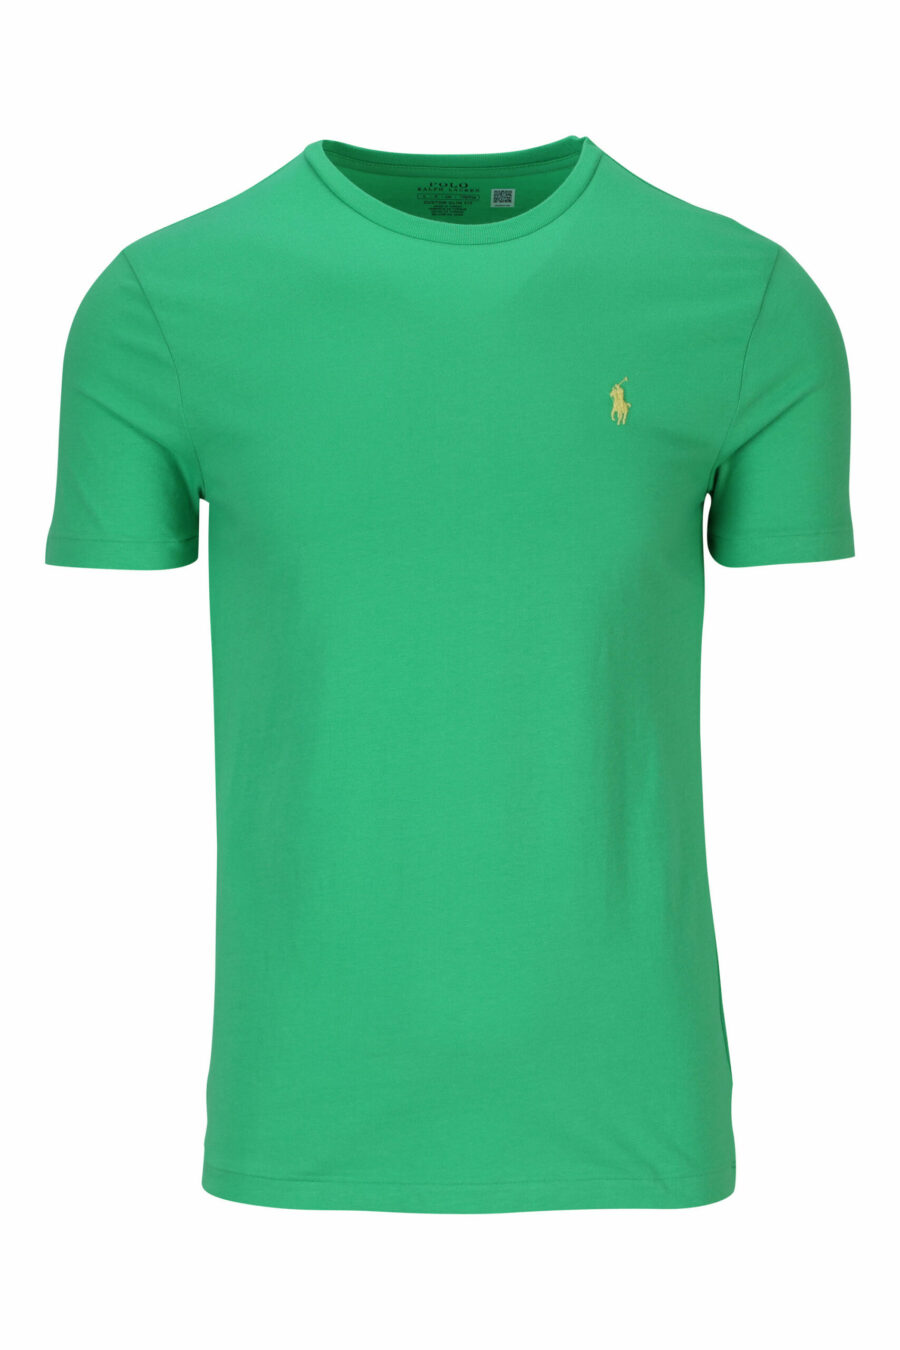 T-shirt verde e amarela com mini-logotipo "polo" - 3616535653825 scaled